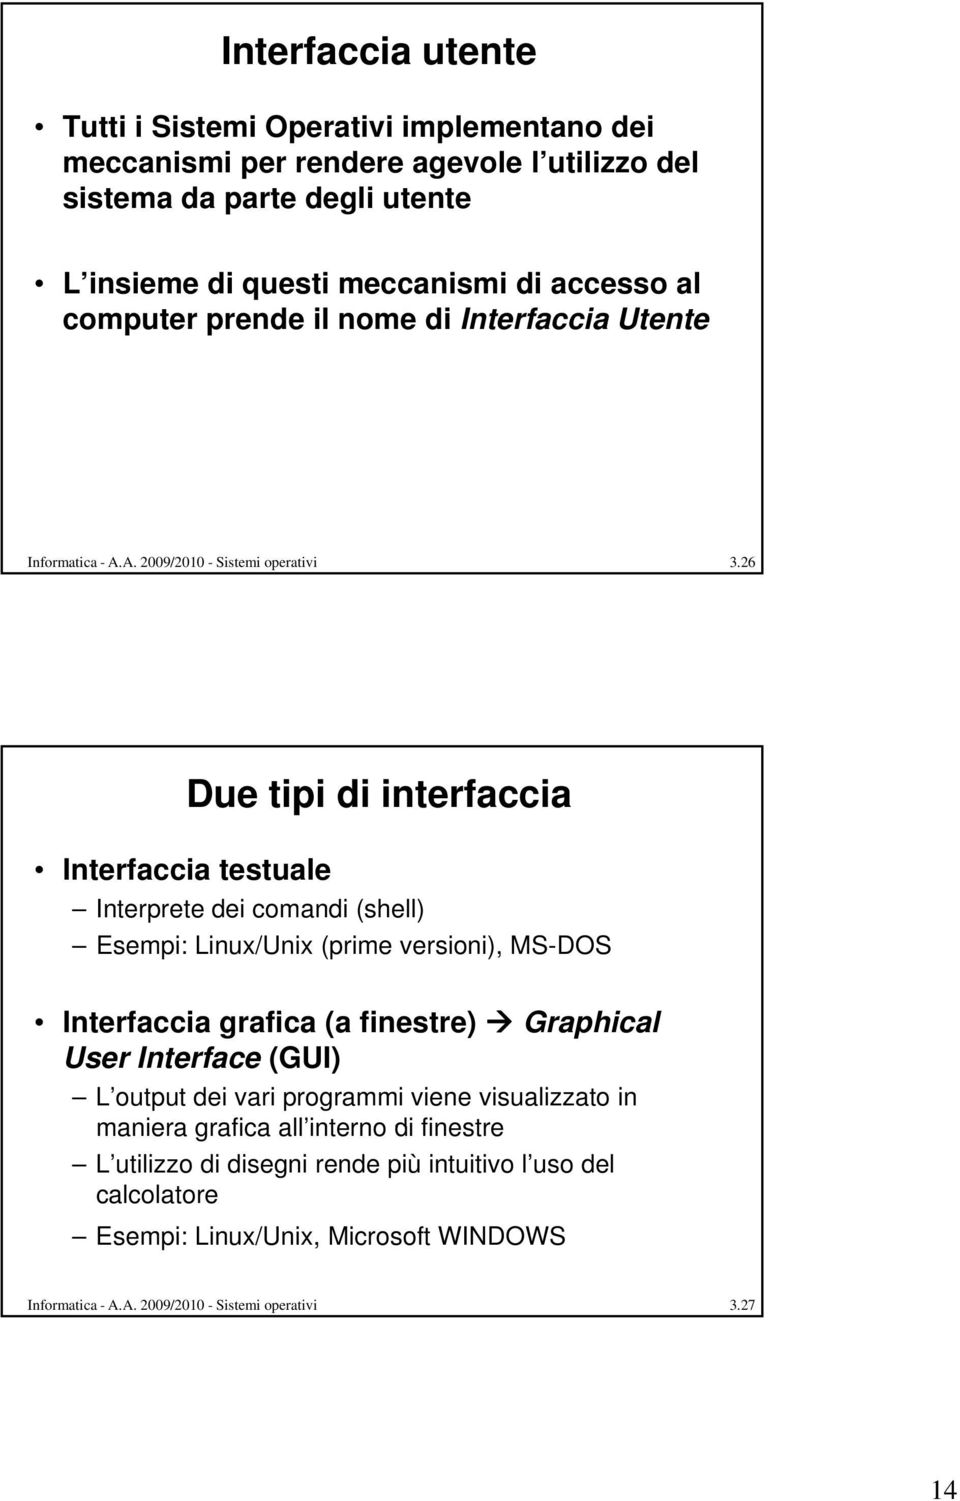 26 Interfaccia testuale Due tipi di interfaccia Interprete dei comandi (shell) Esempi: Linux/Unix i (prime versioni), i) MS-DOS Interfaccia grafica (a finestre) Graphical User